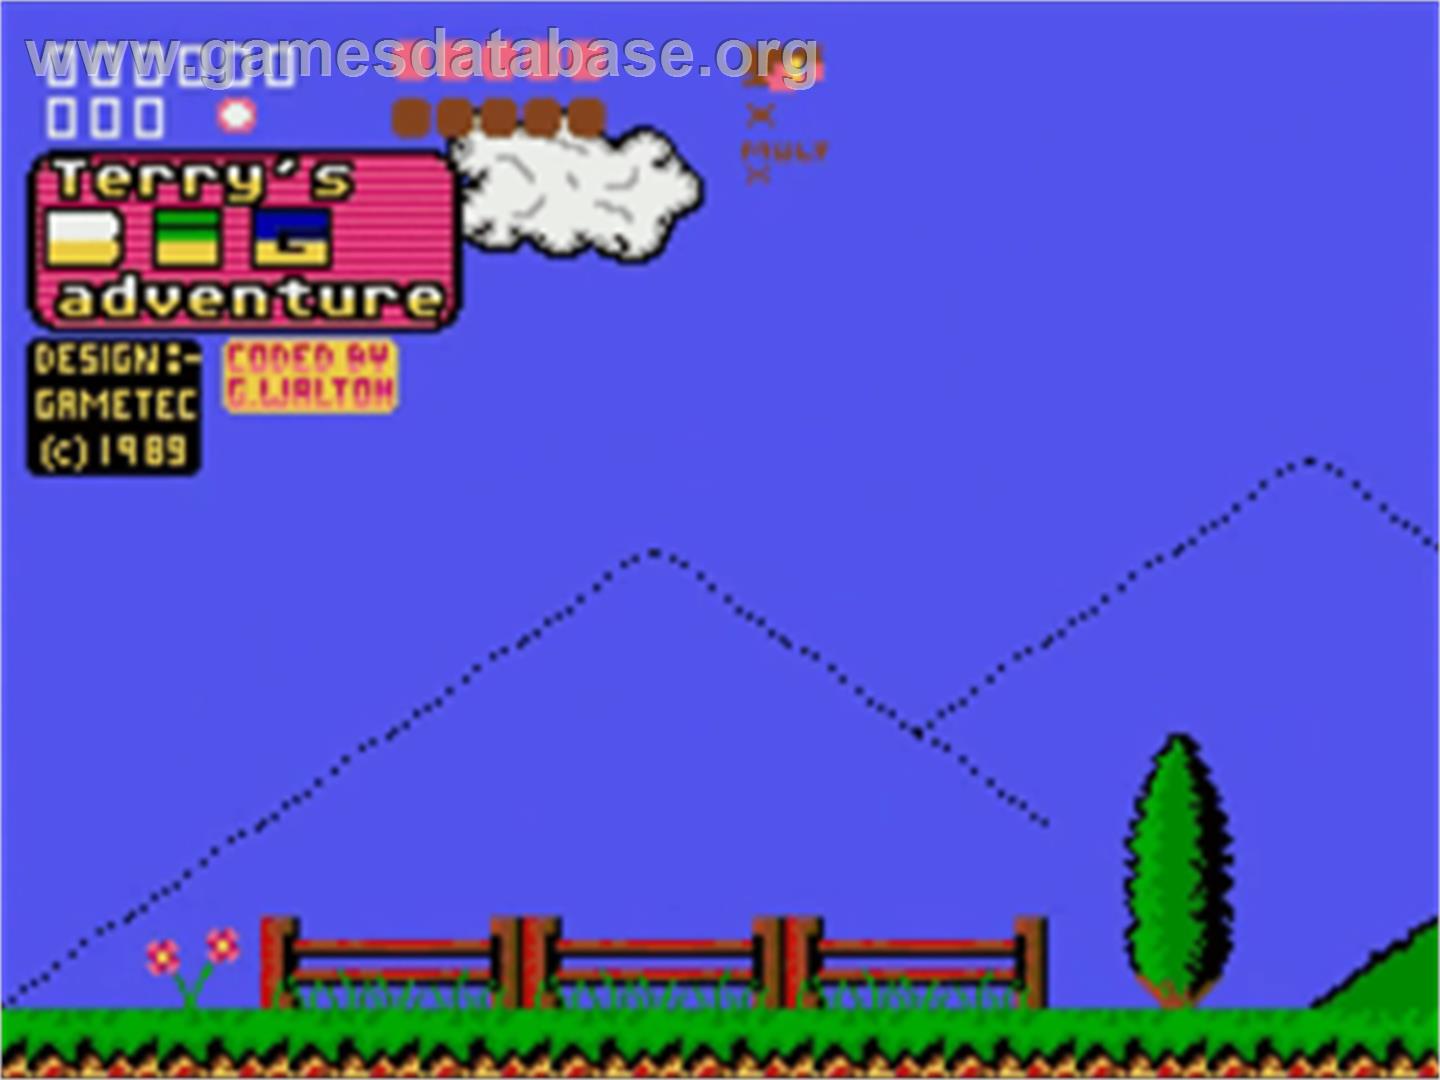 Terry's Big Adventure - Commodore Amiga - Artwork - Title Screen